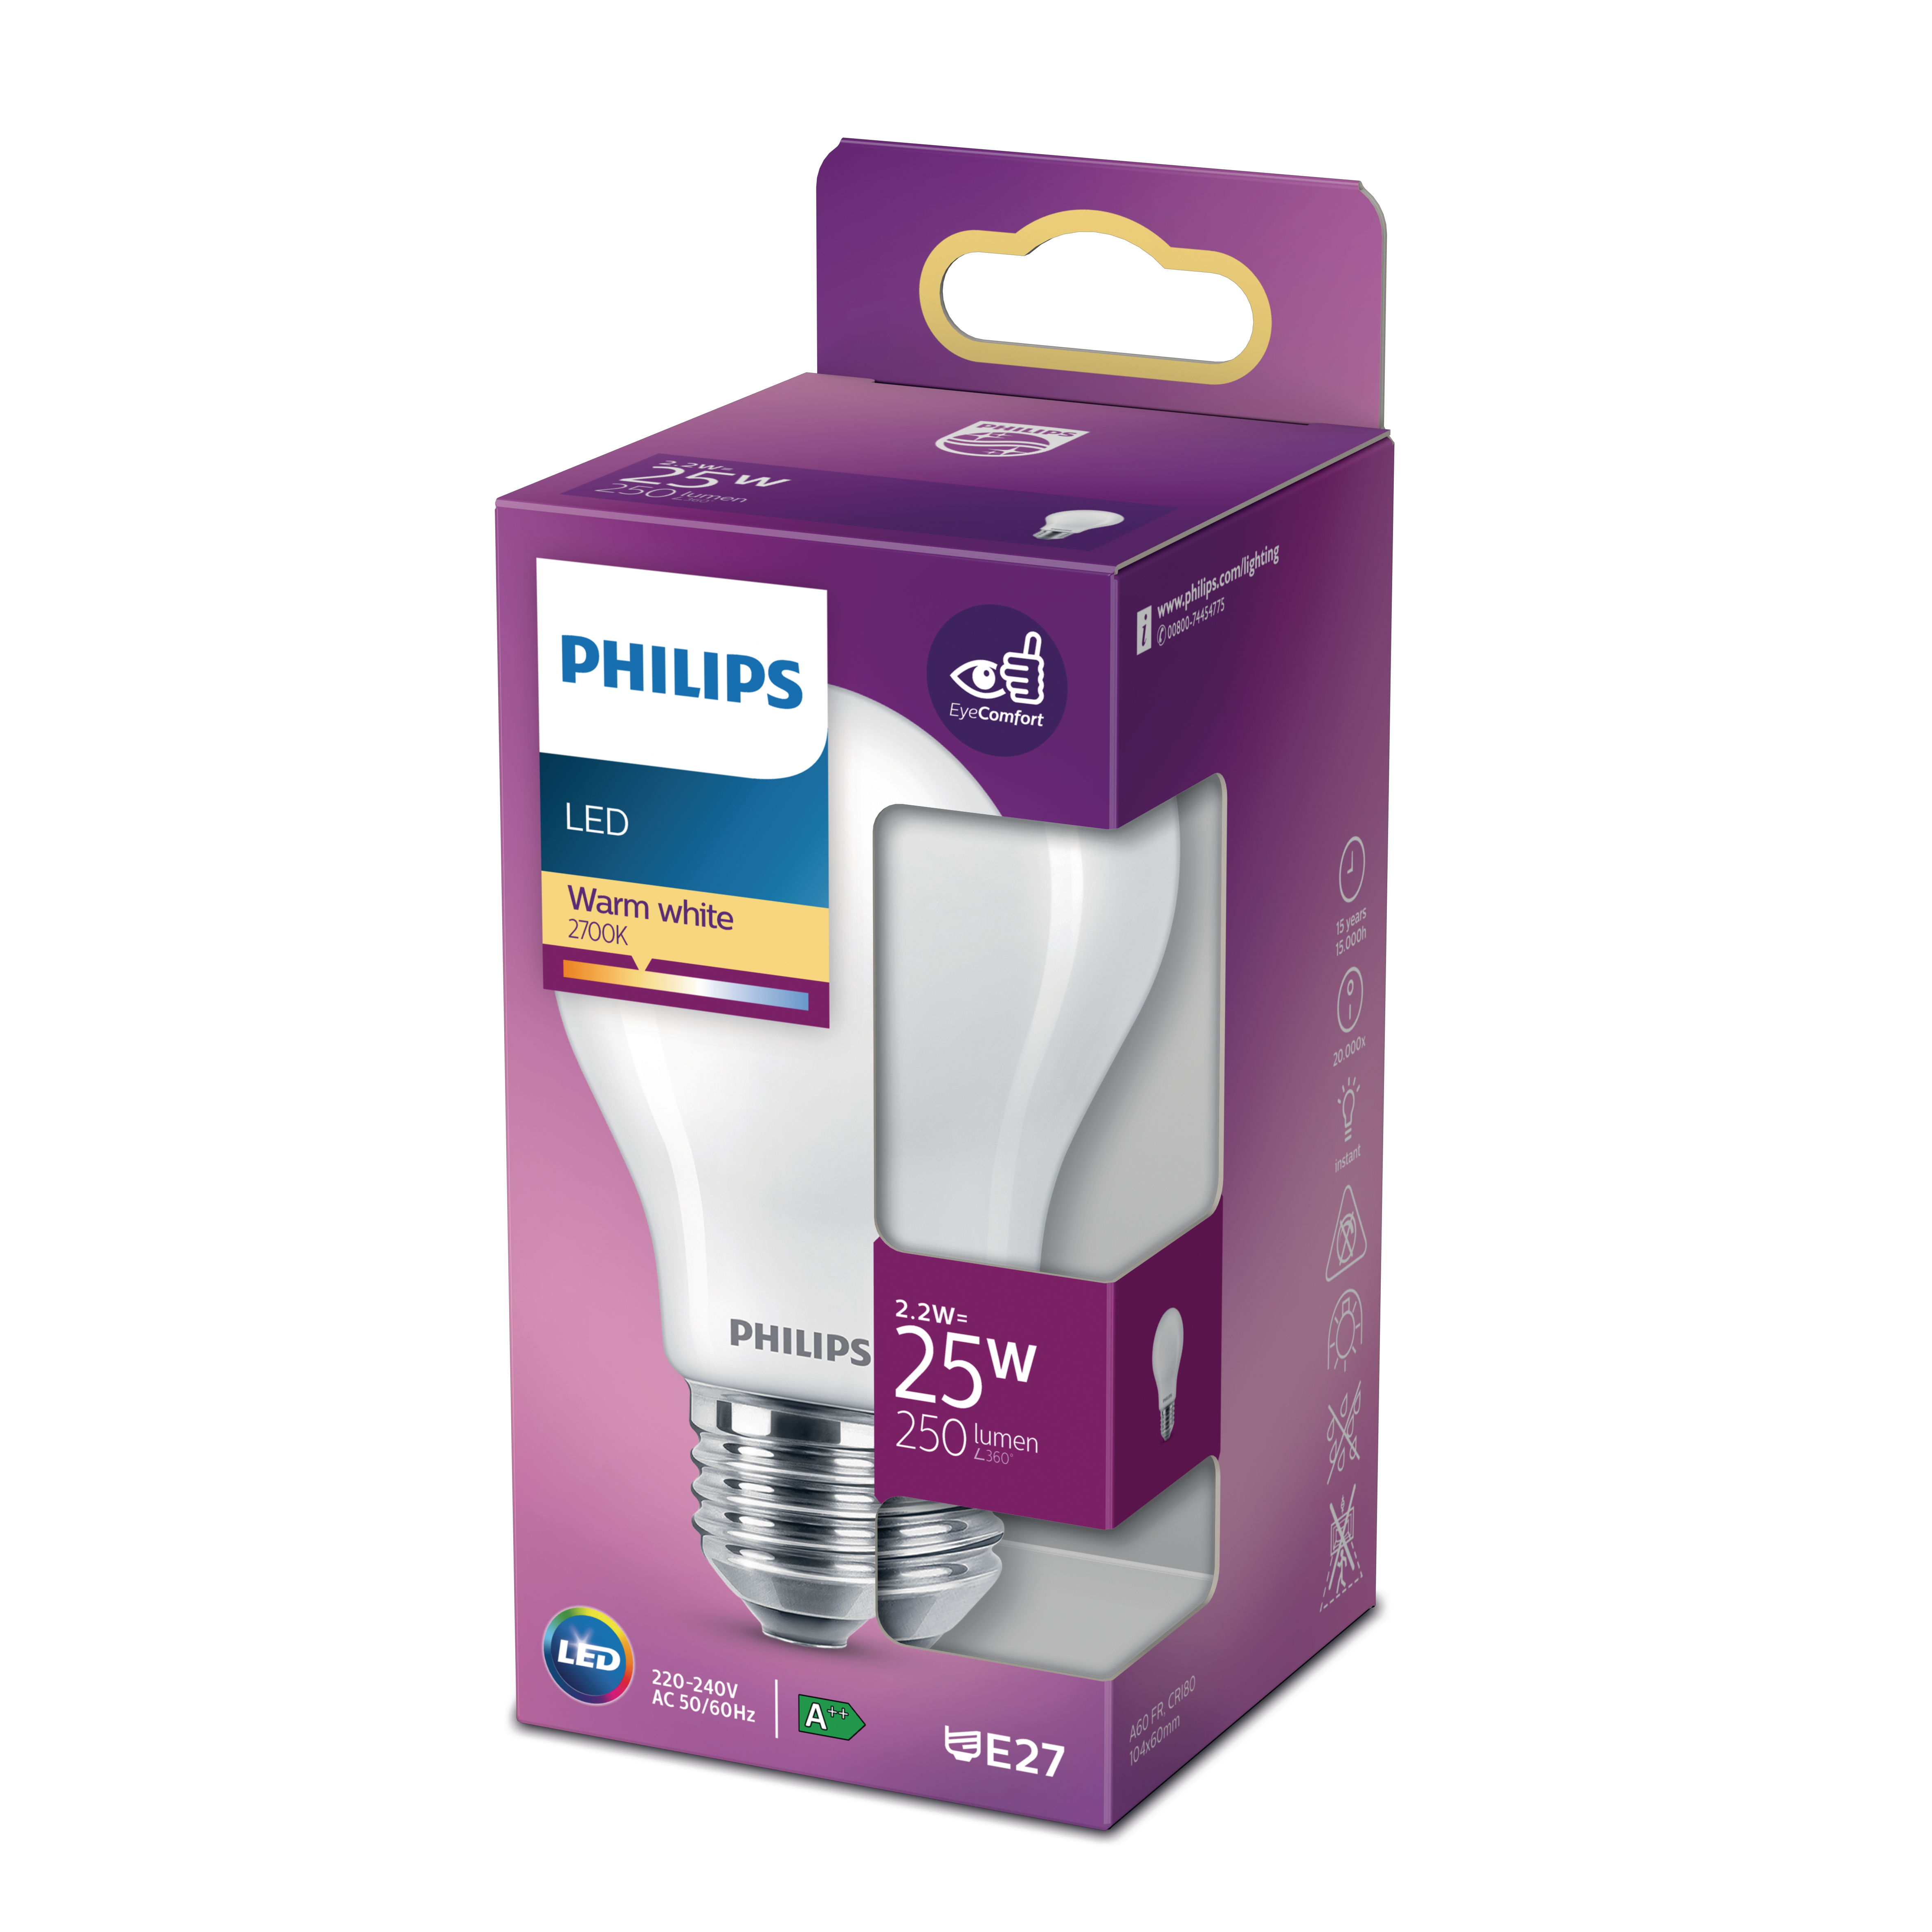 LED LEDclassic PHILIPS 25W ersetzt Lampe warmweiß Lampe